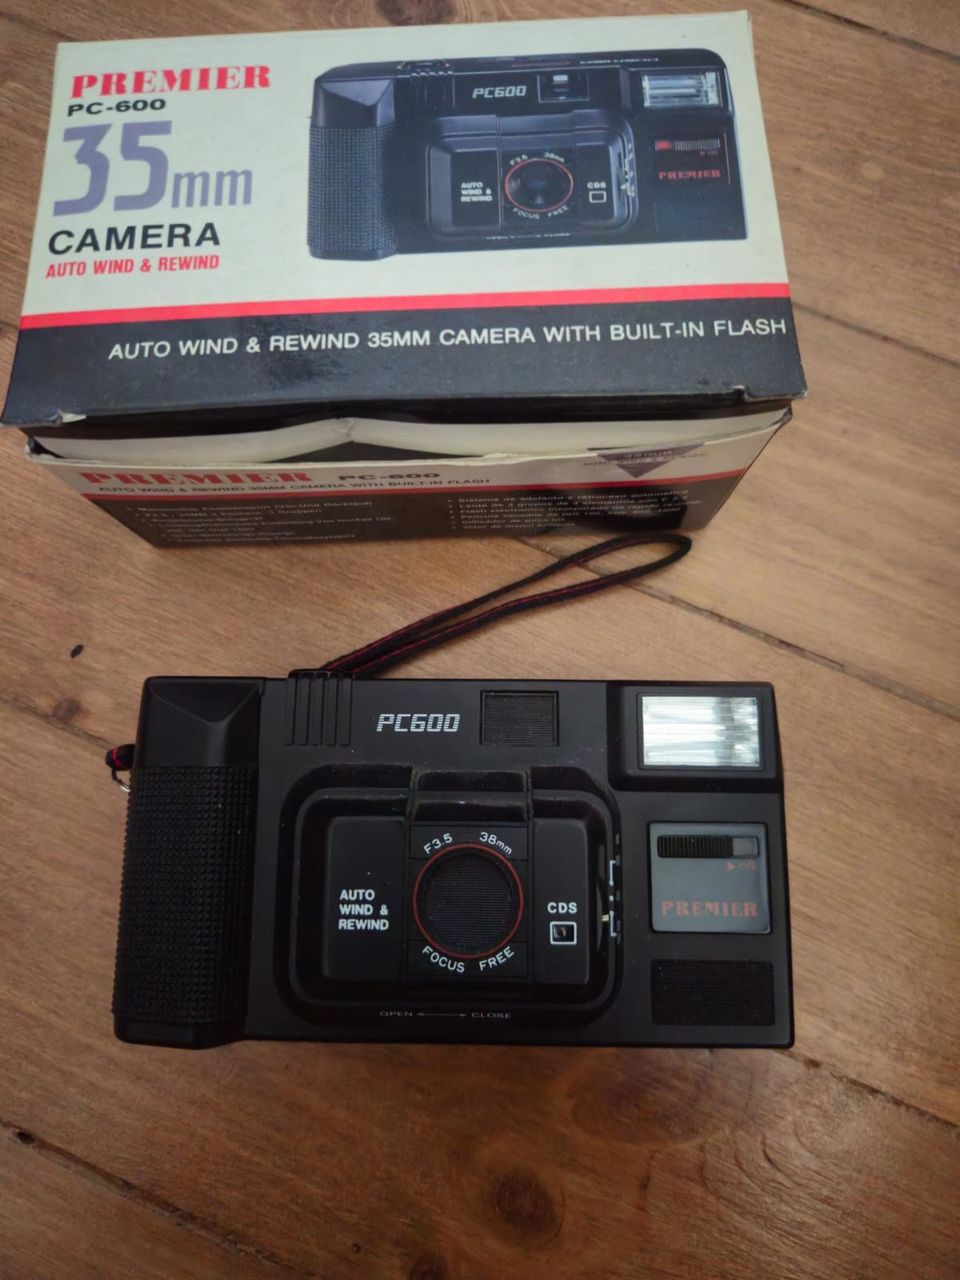 Premier PC - 600 - kamera